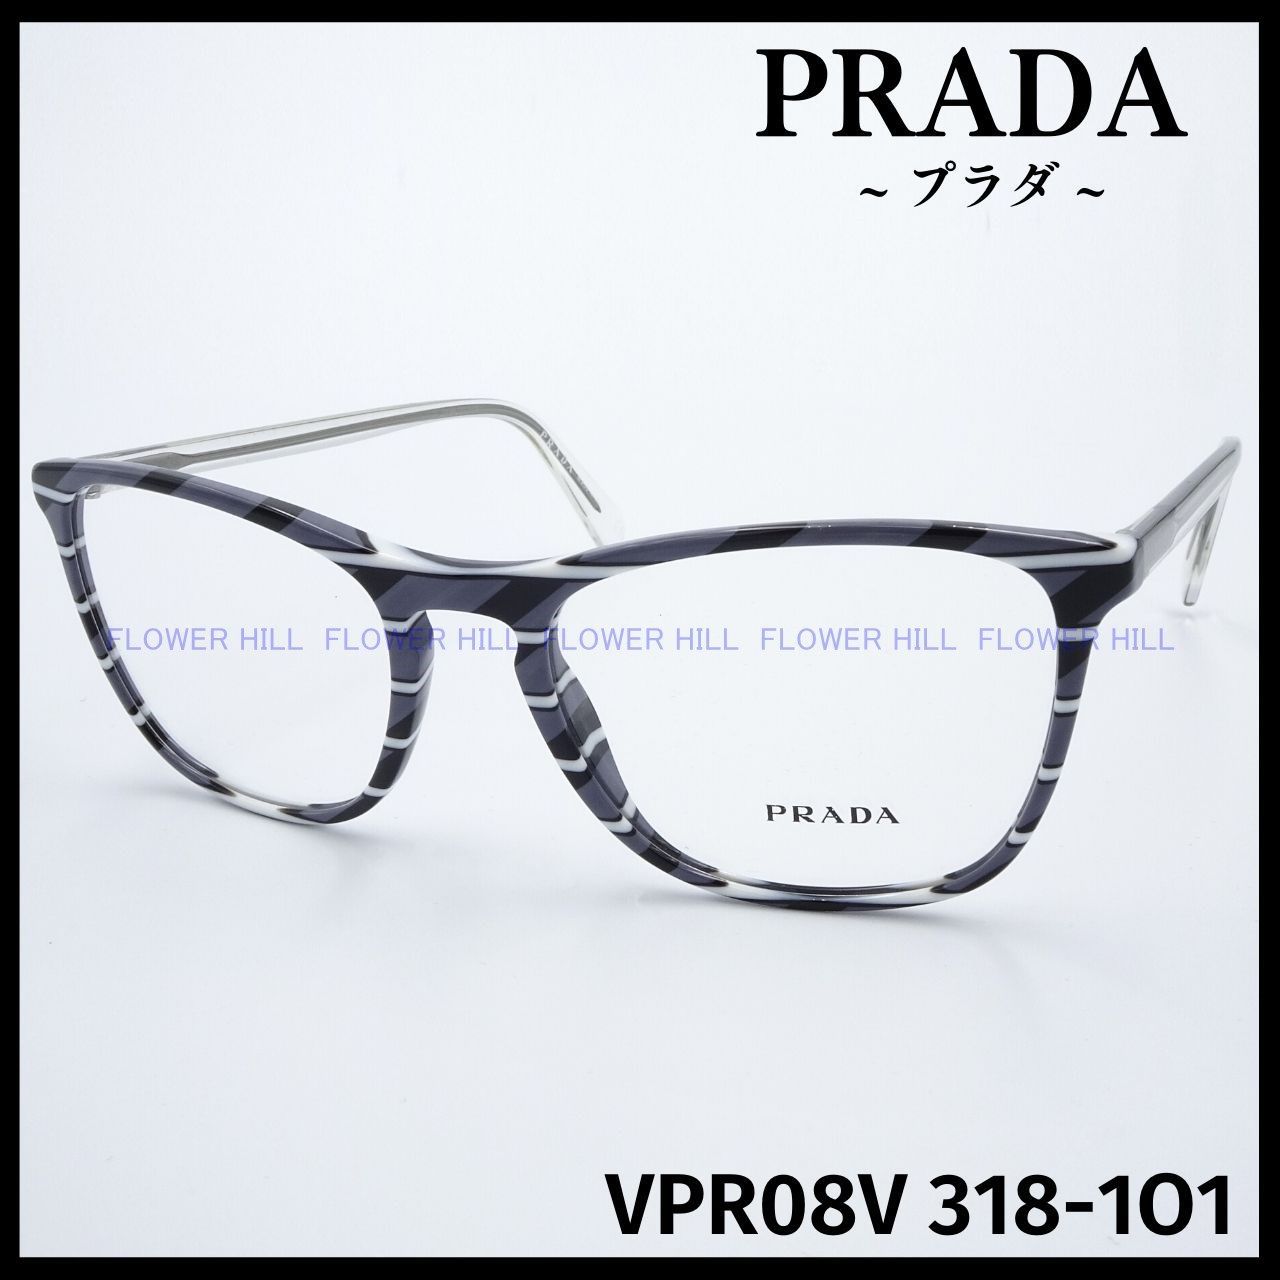 プラダ PRADA メガネ ストライプグレー VPR08V 318-1O1